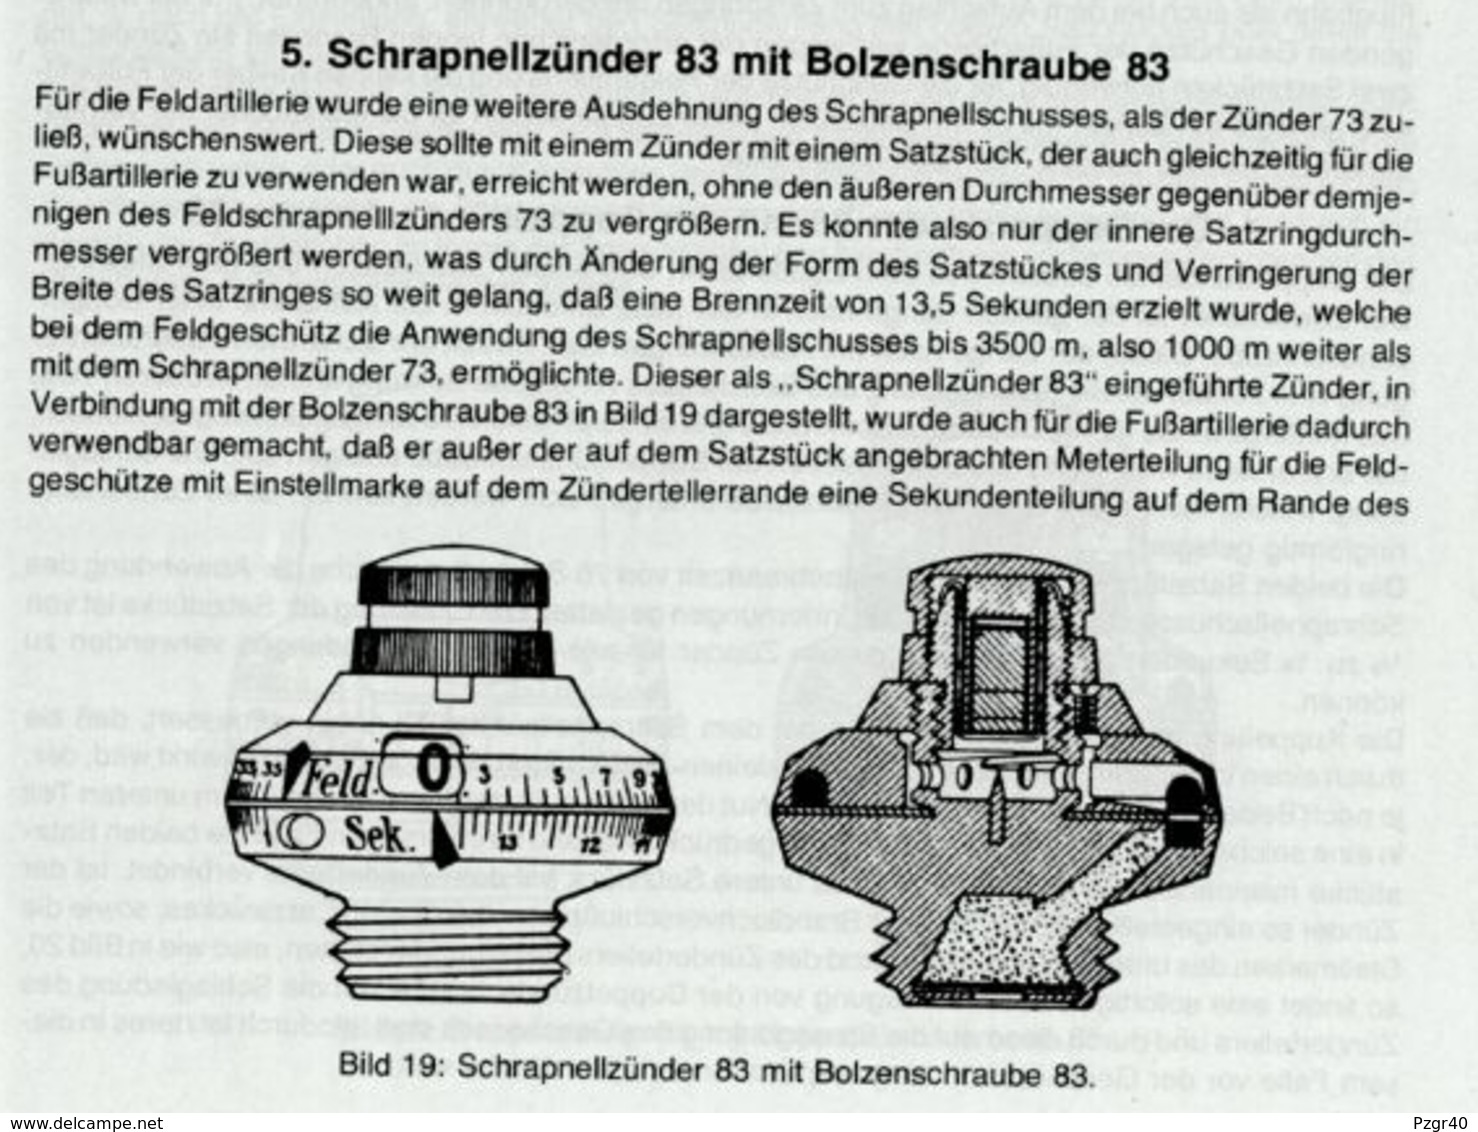 Fuze Schrapnellzünder 83 German shrapnel fusée Allemande